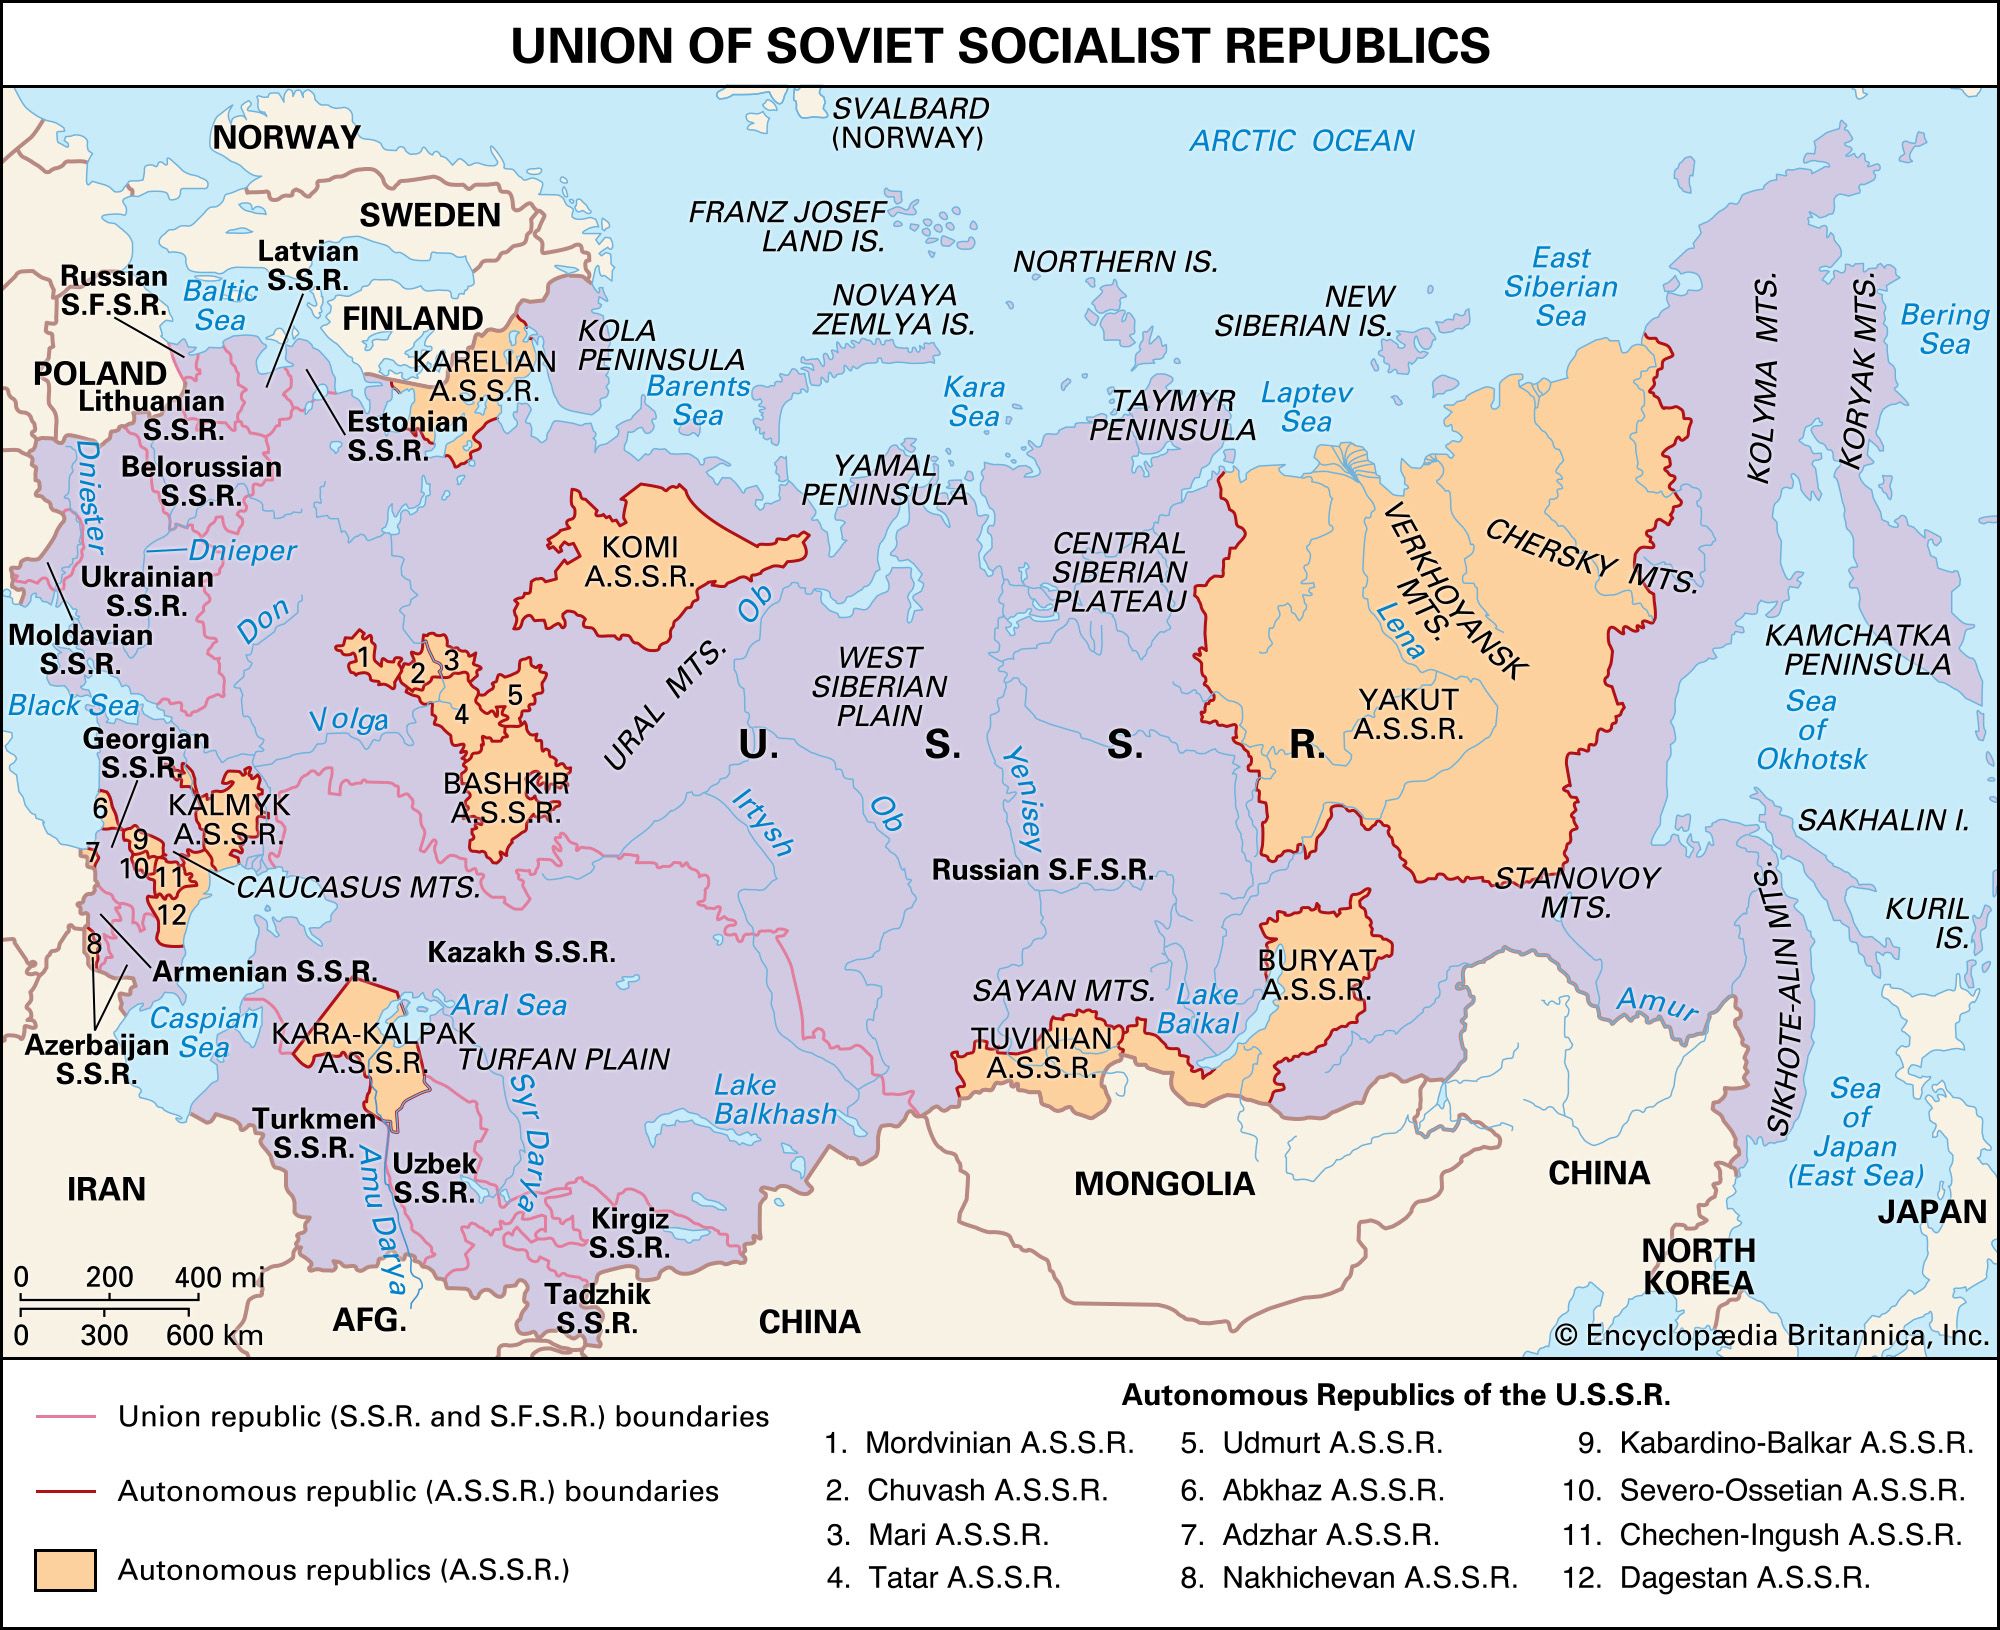 https://cdn.britannica.com/78/4878-050-C55238A0/Union-of-Soviet-Socialist-Republics.jpg